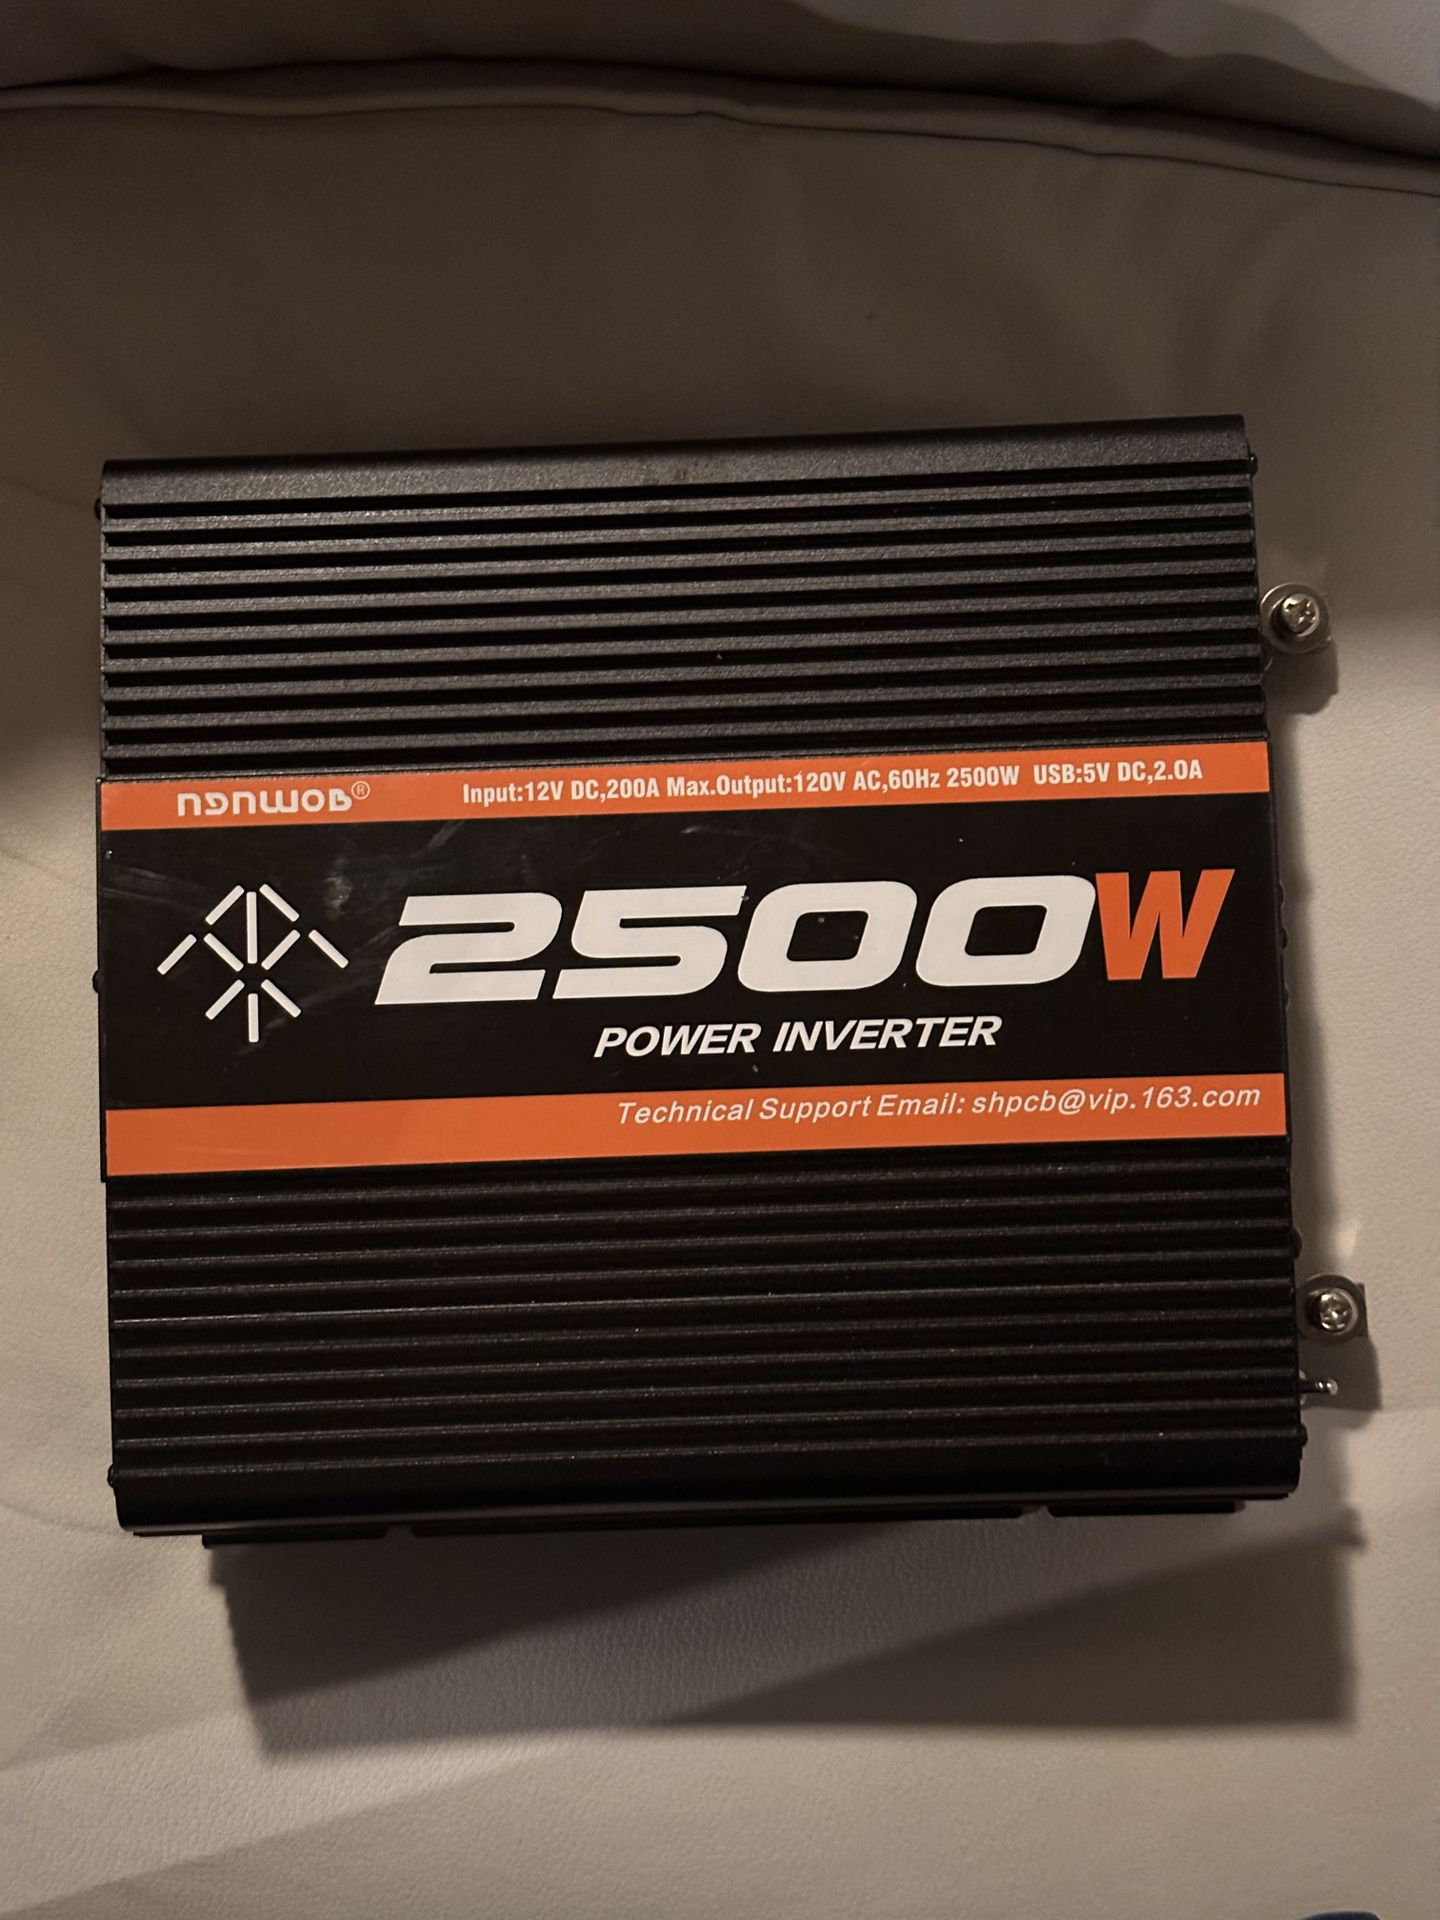 2500 Watt Power Inverter Brand New